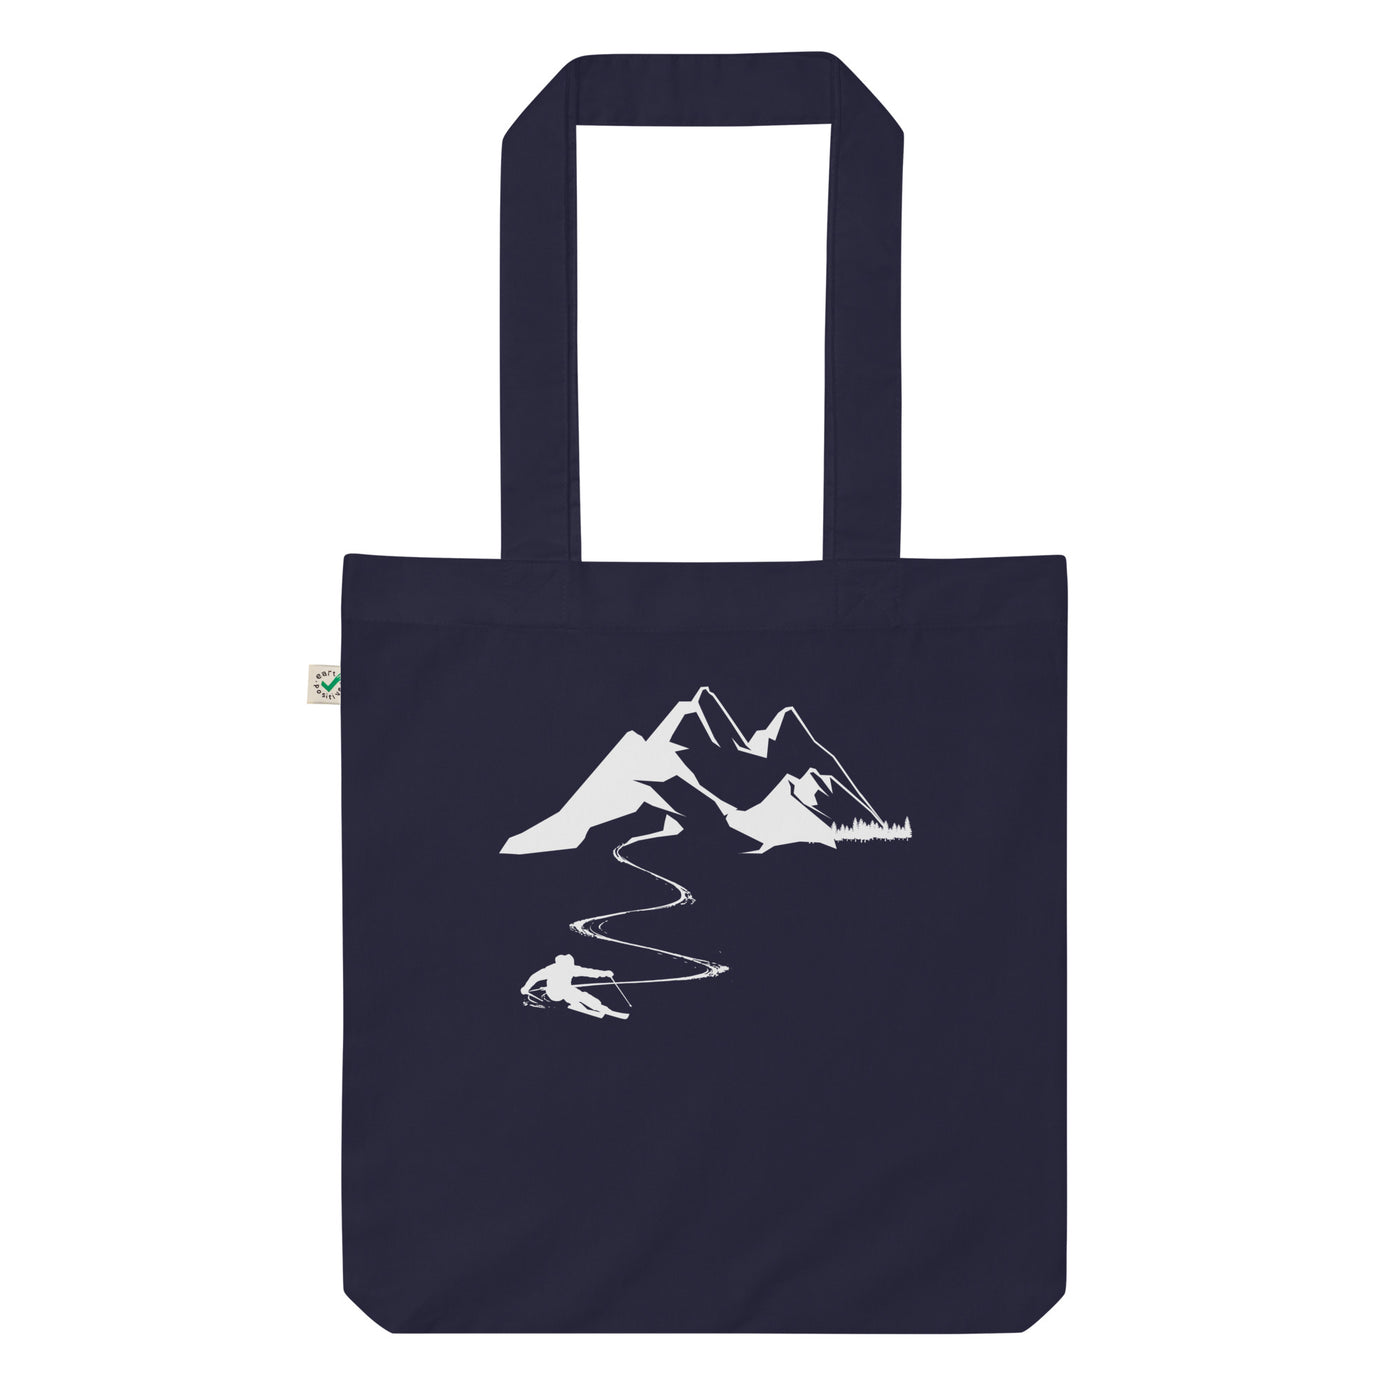 Skisüchtig - Organic Einkaufstasche ski Navy